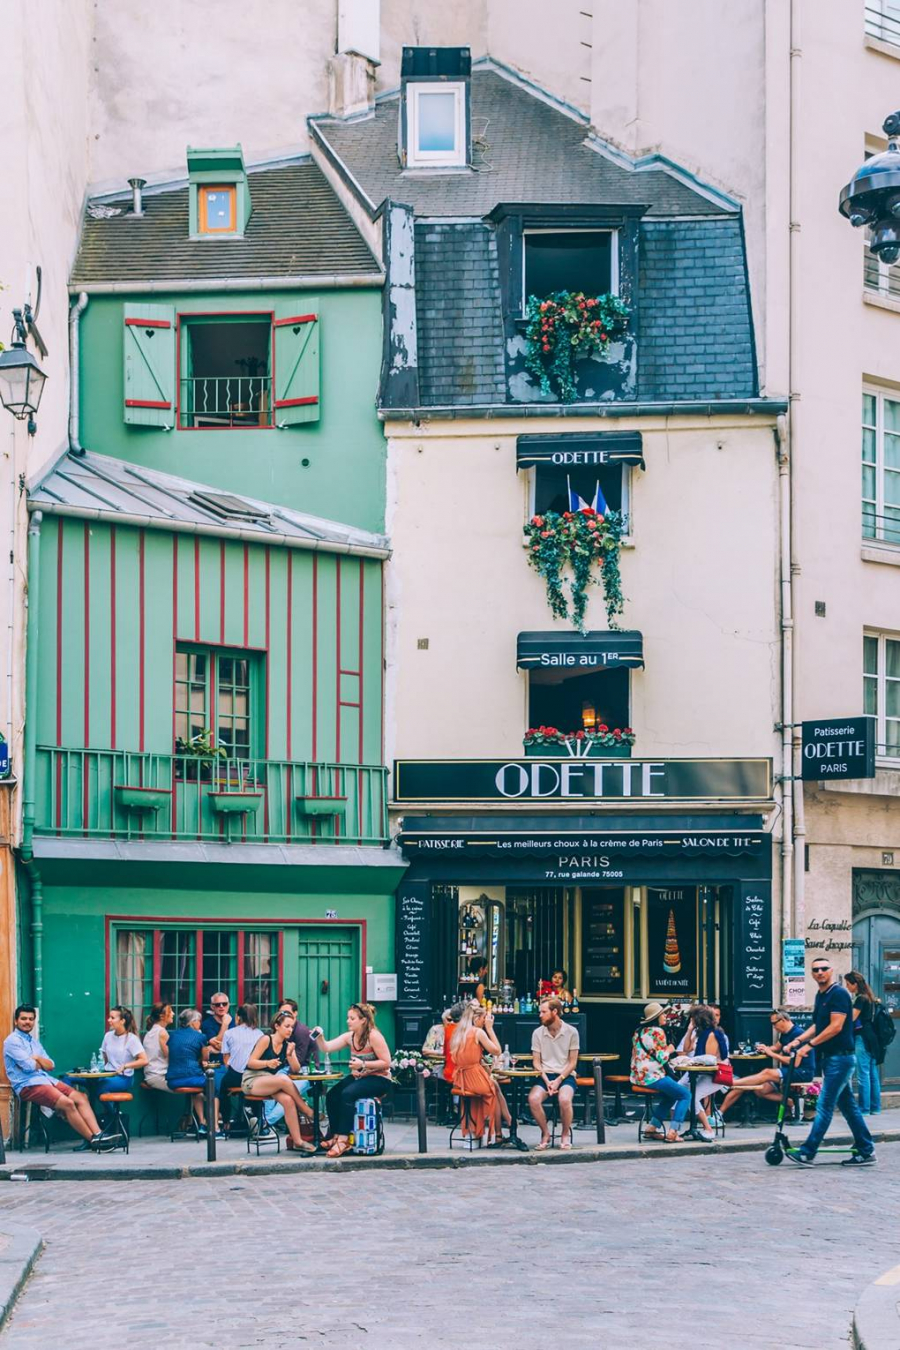 Tiệm bánh Odette, tận hưởng vẻ đẹp của các món tráng miệng Paris